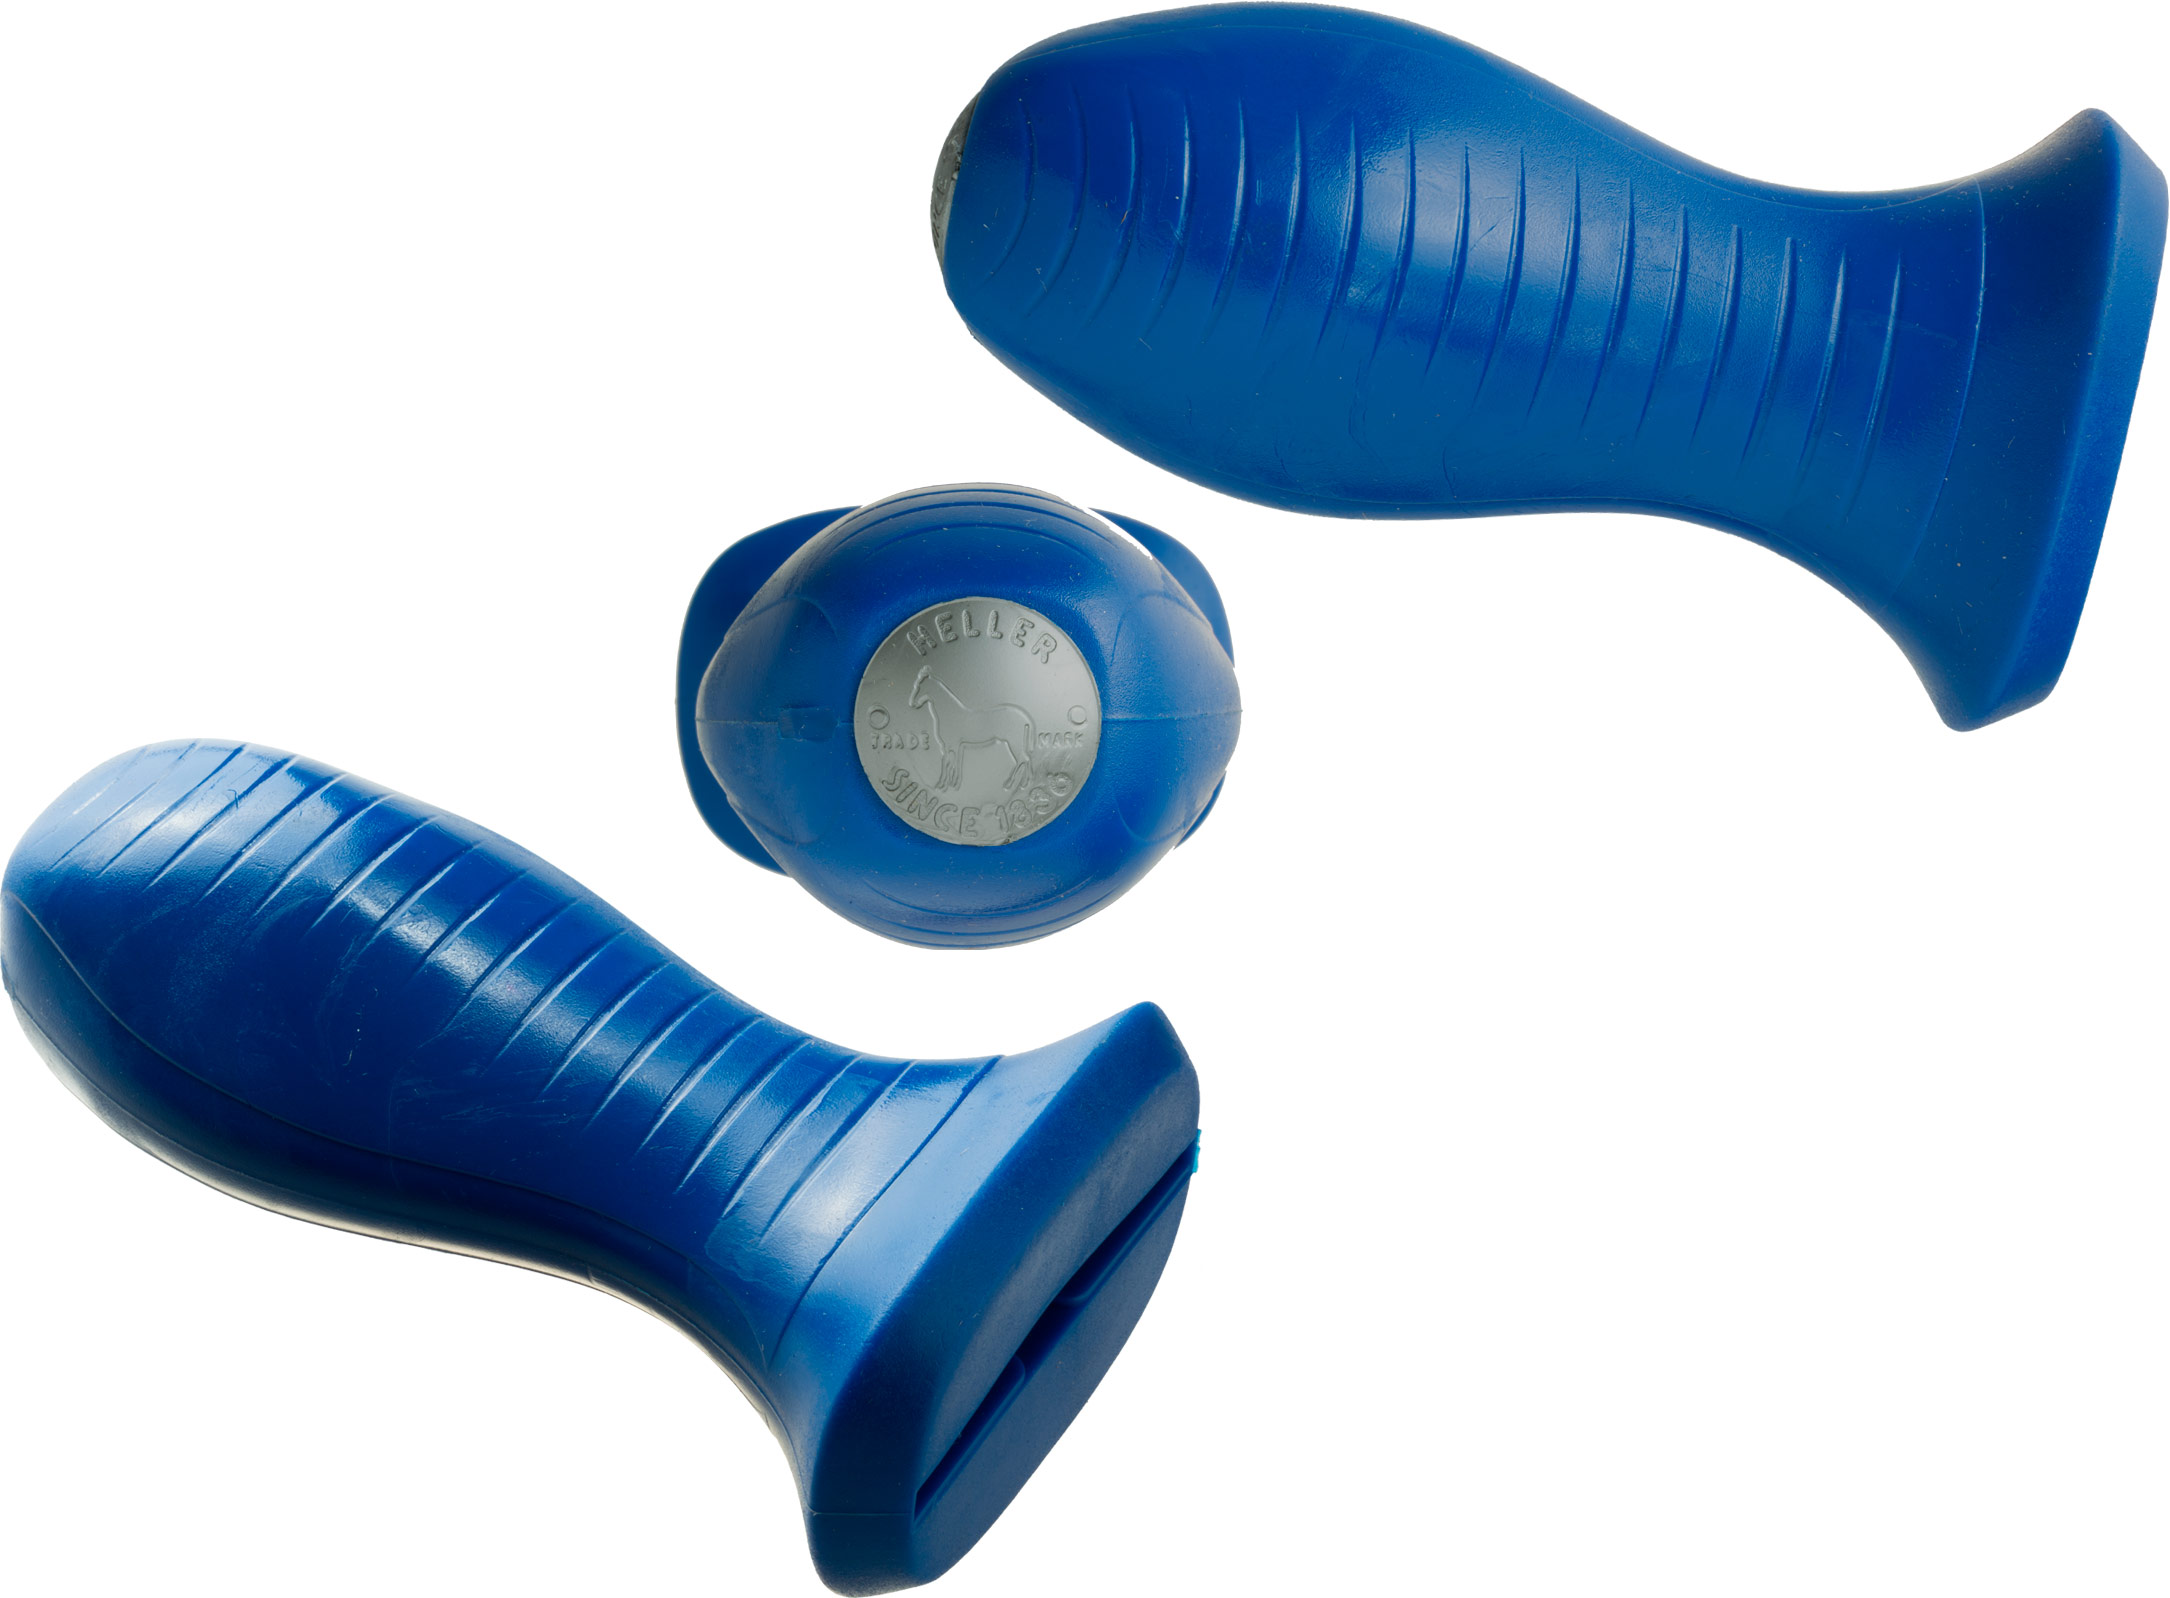 Heller rasp handle GRIP blue, voor eXceL raspen